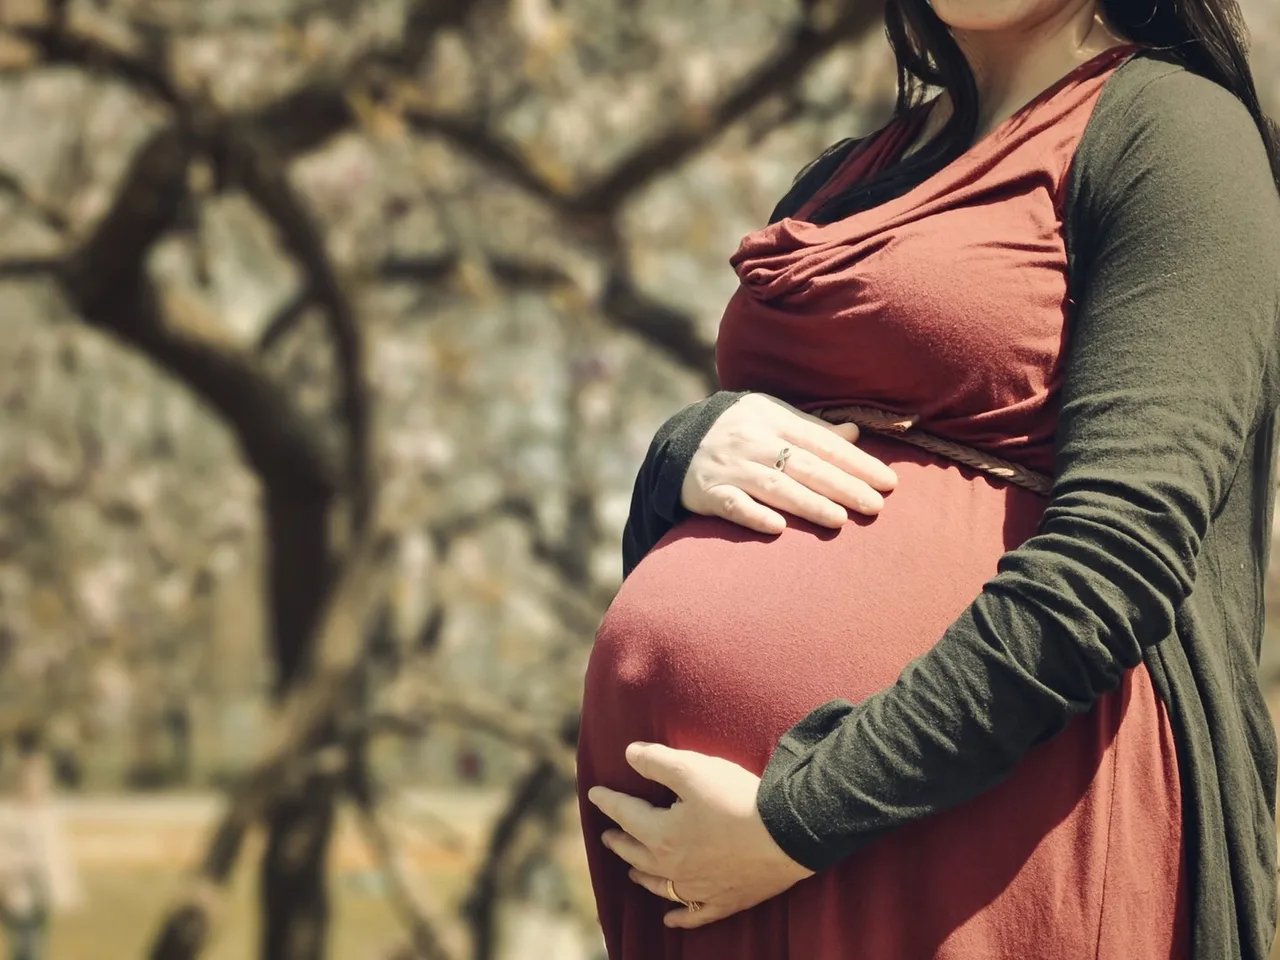 Woman Fired For Pregnancy: काम से निकाले जाने के बाद महिला को मिले 15 लाख